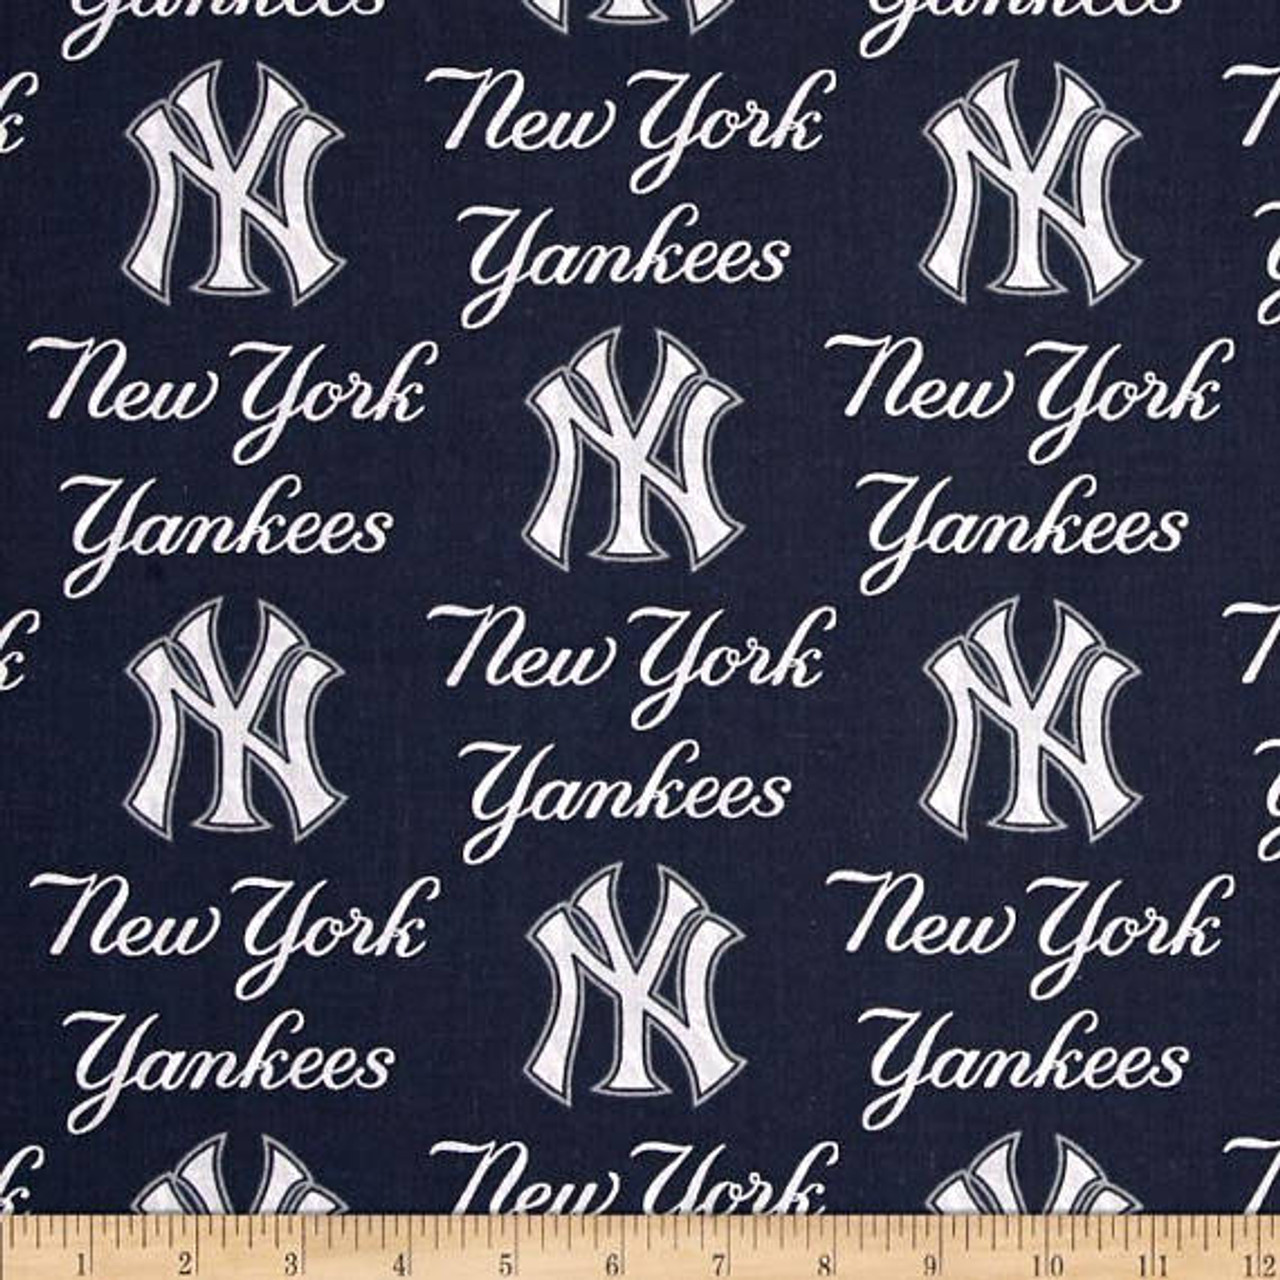 New York Yankees Apparel 